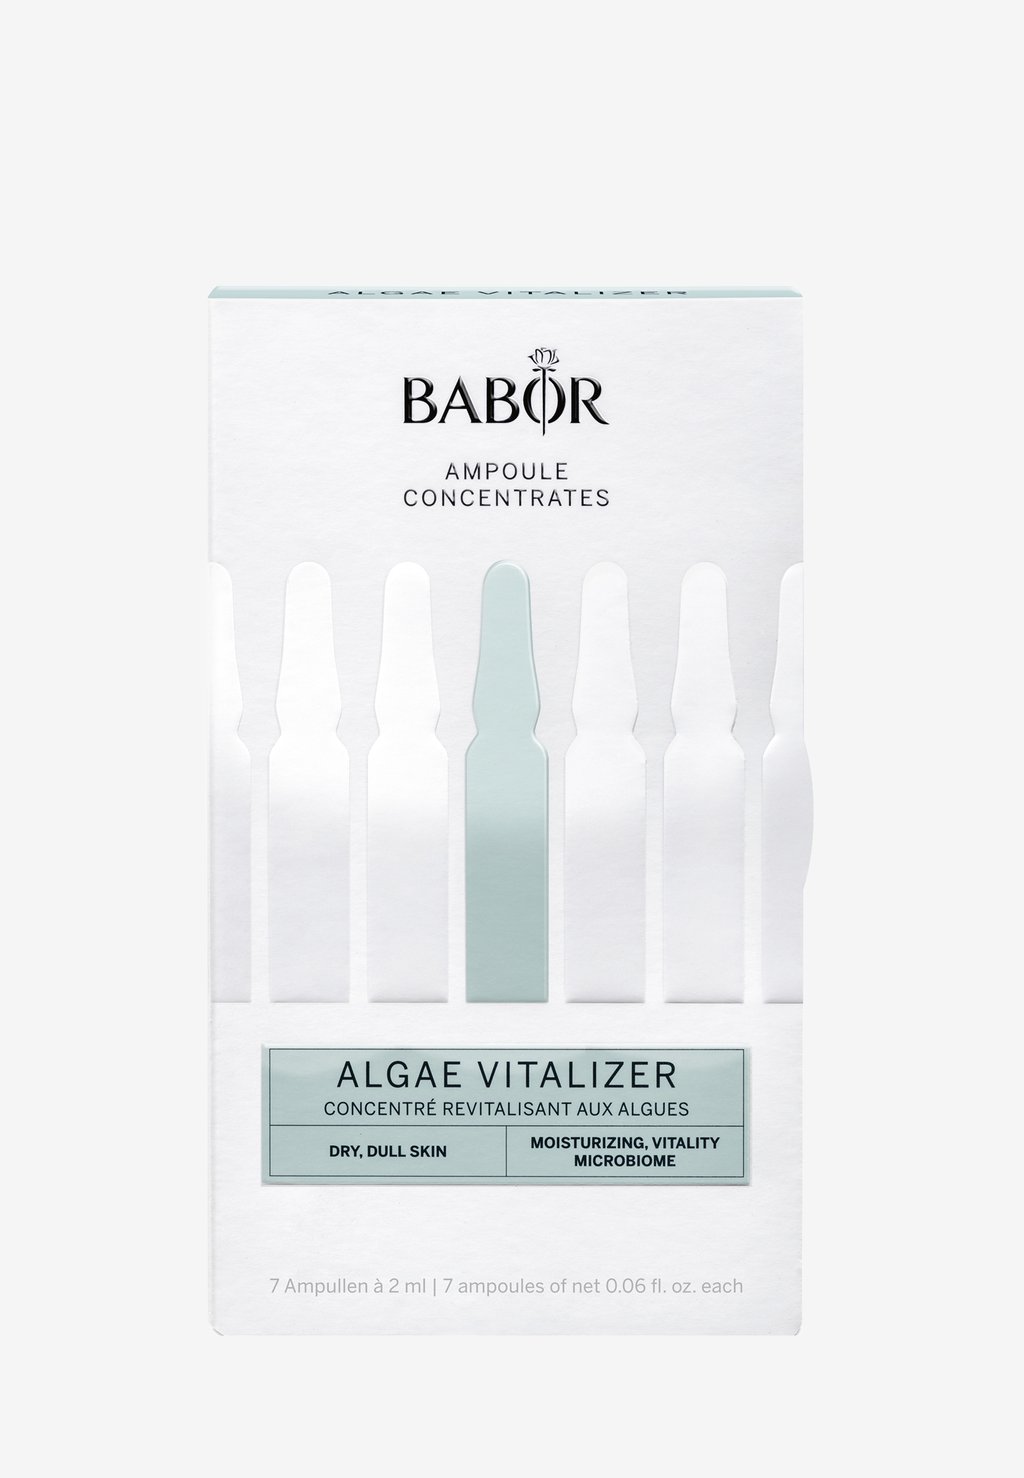 Набор для ухода за кожей Algae Vitalizer BABOR набор для ухода за кожей rituals